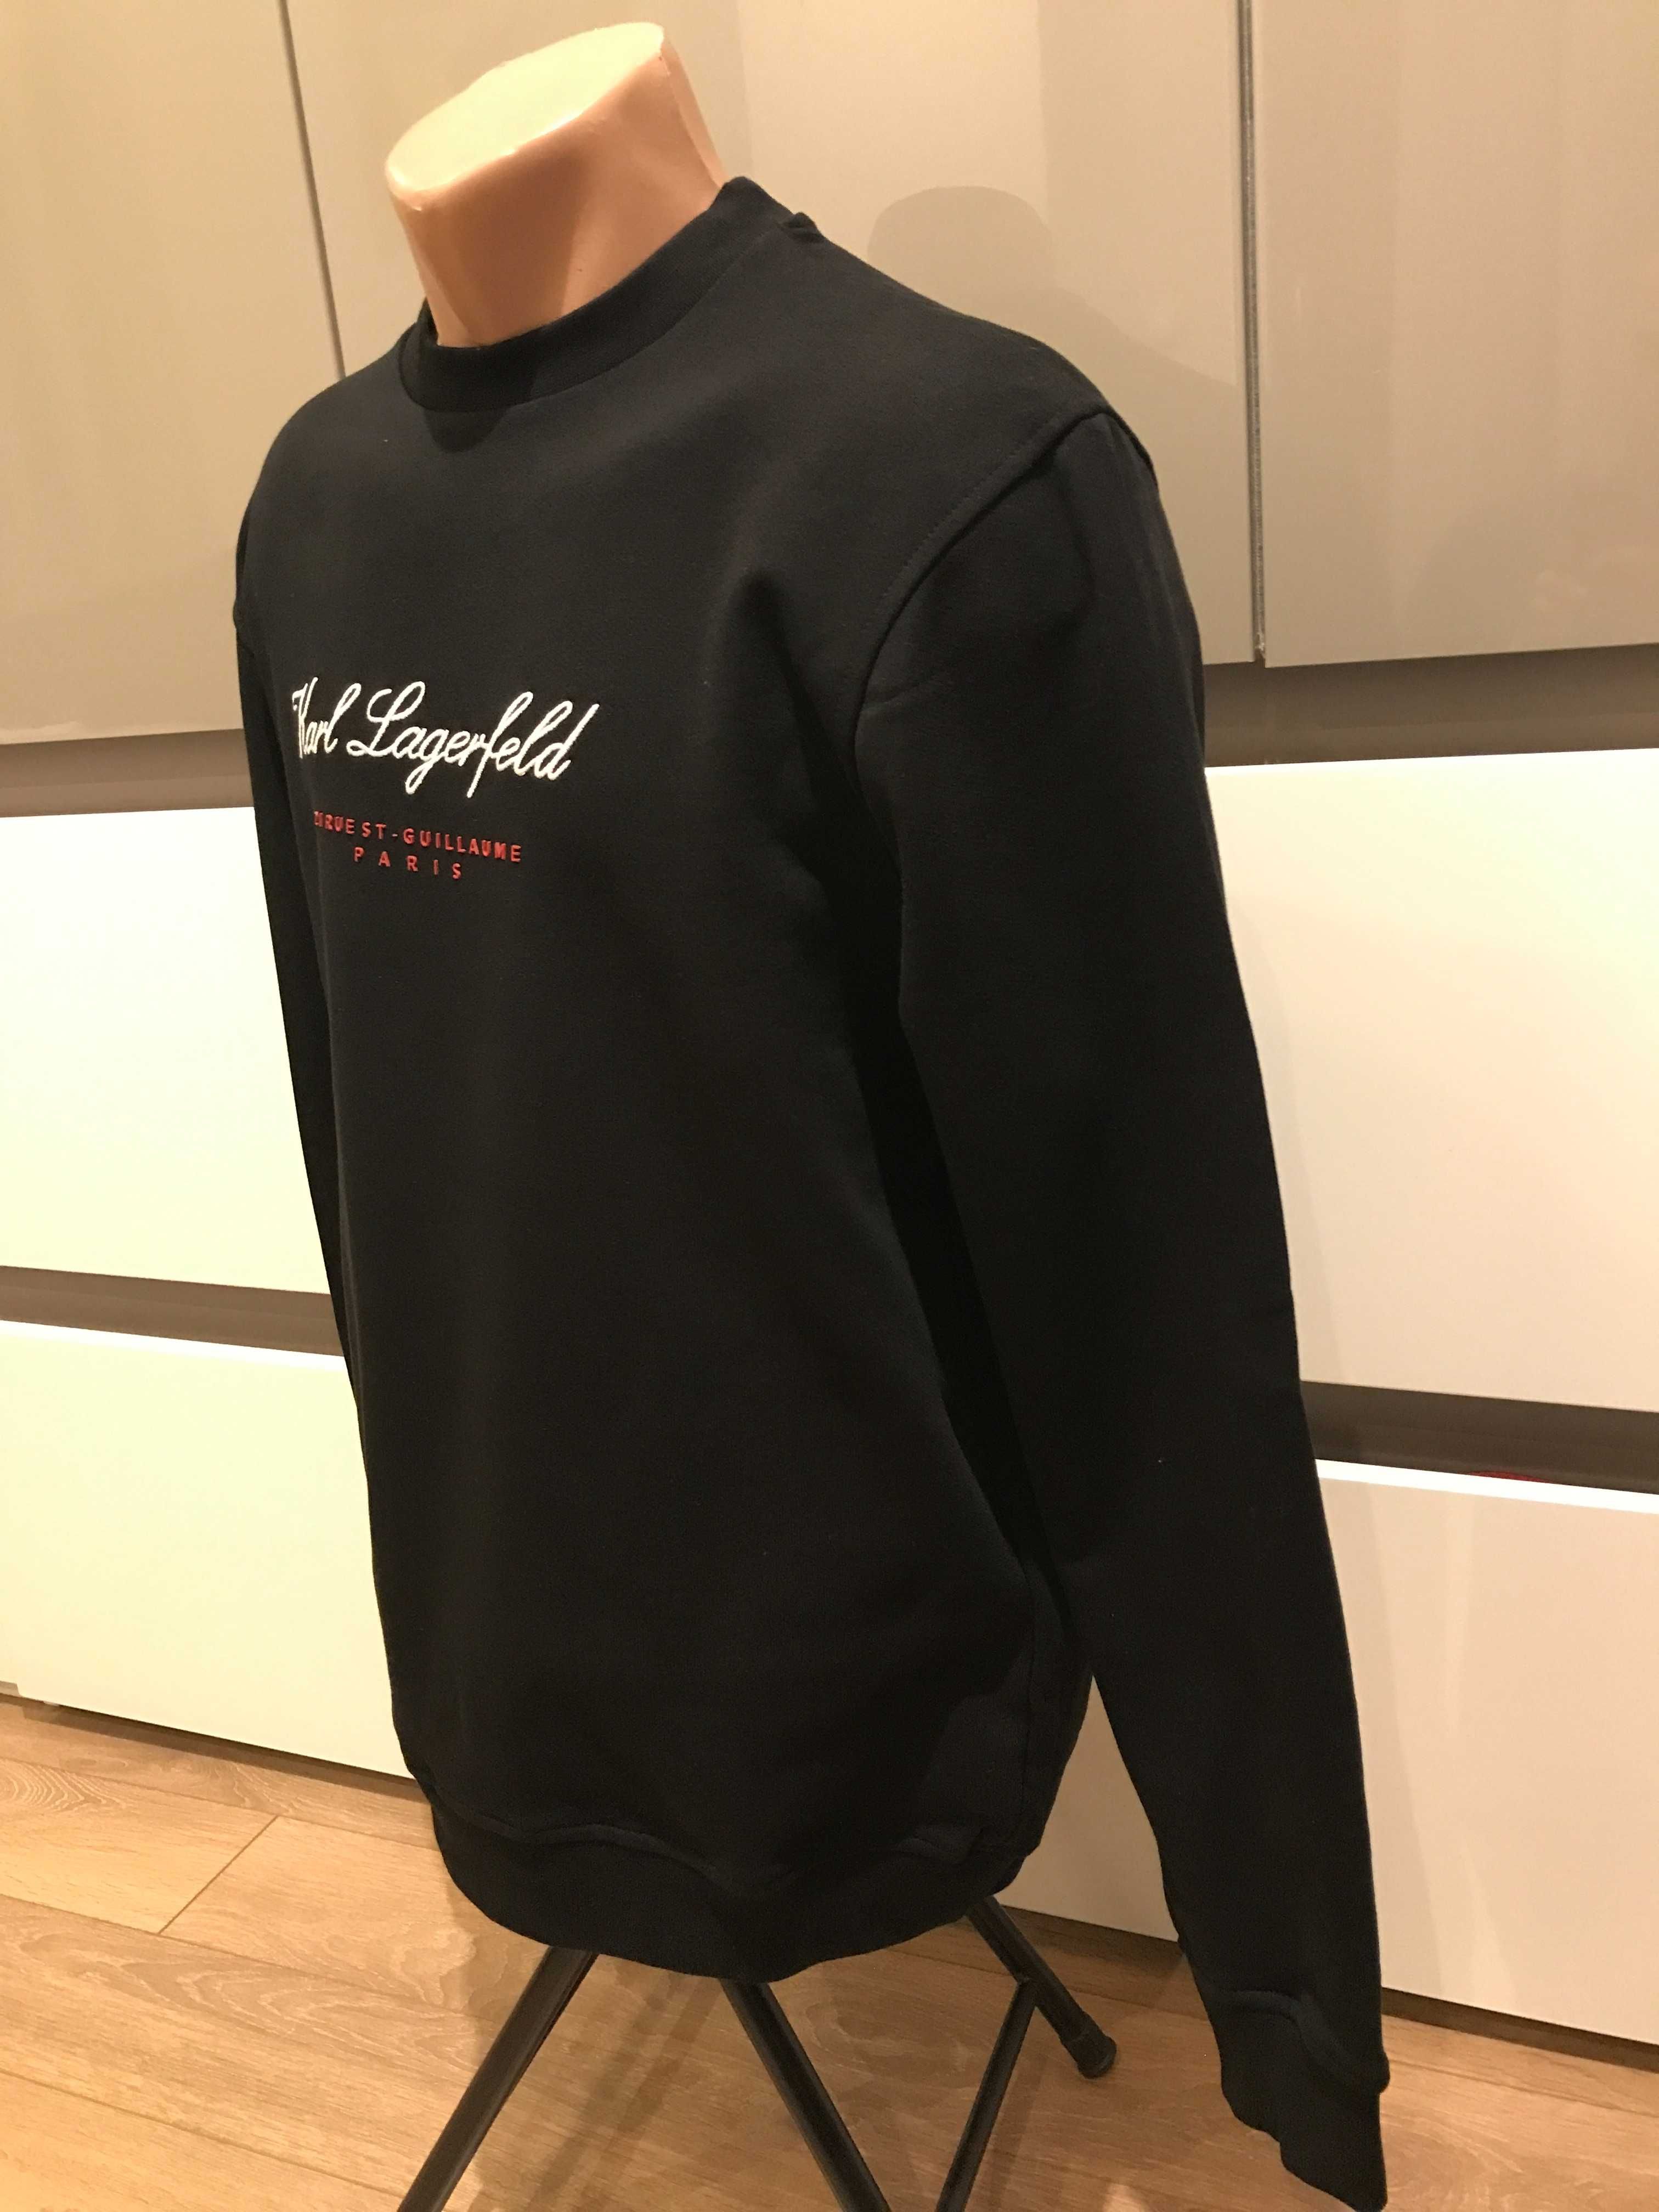 Оригинална унисекс блуза Karl Lagerfeld, черна, размери: L и XL